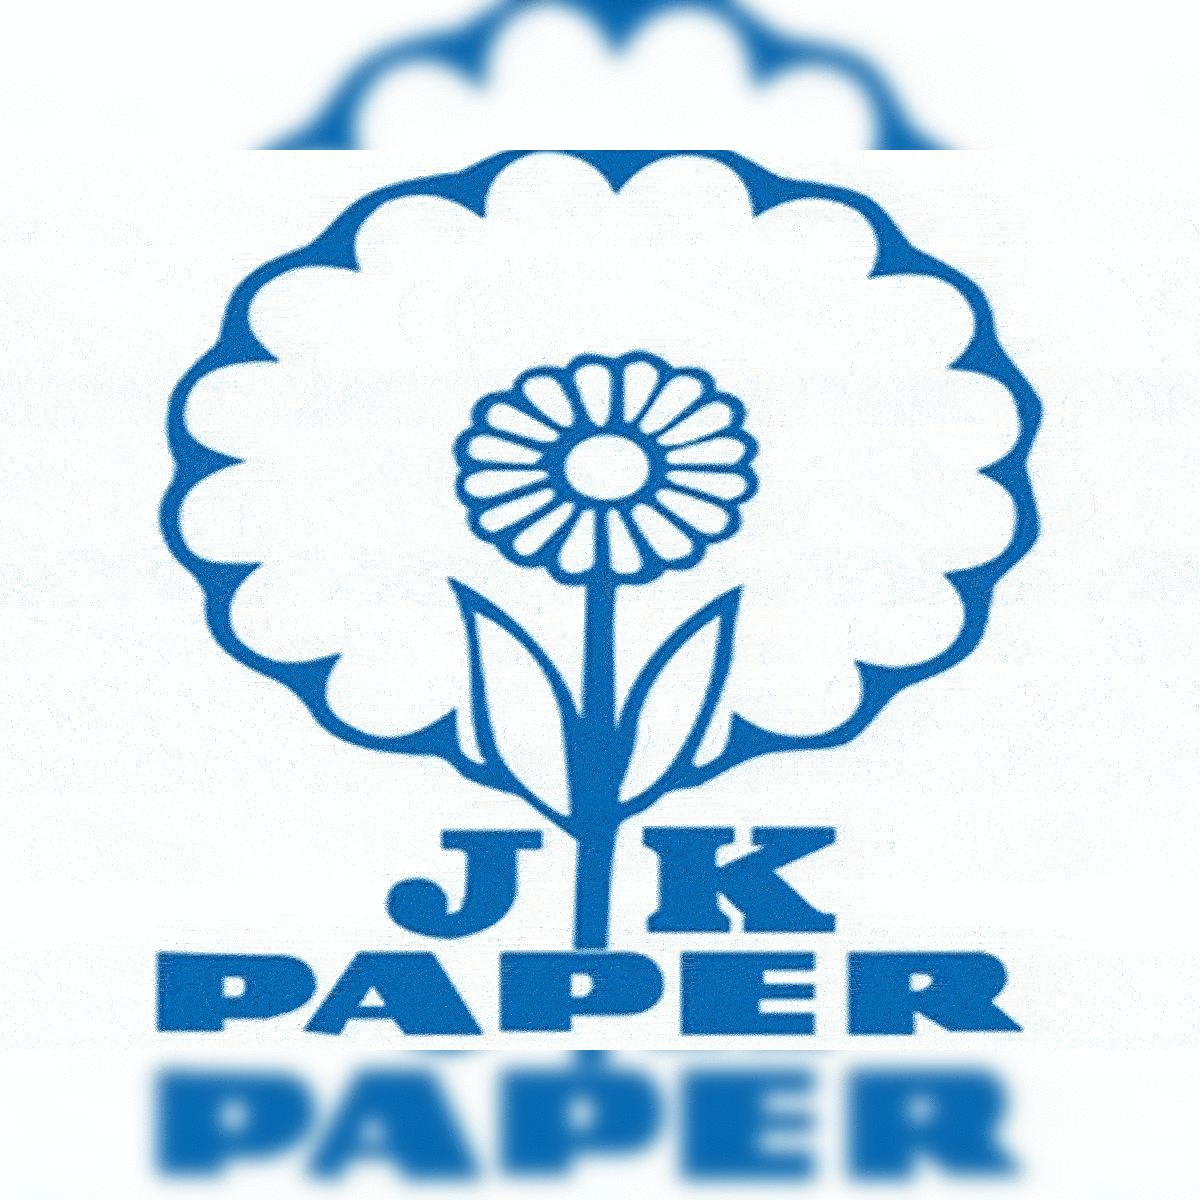 Susan Photo Album logo, JK Enterprise logo, Ghostbusters logo, Capitao  caverna logo, Editorial vector logo on white paper Stock Vector Image & Art  - Alamy